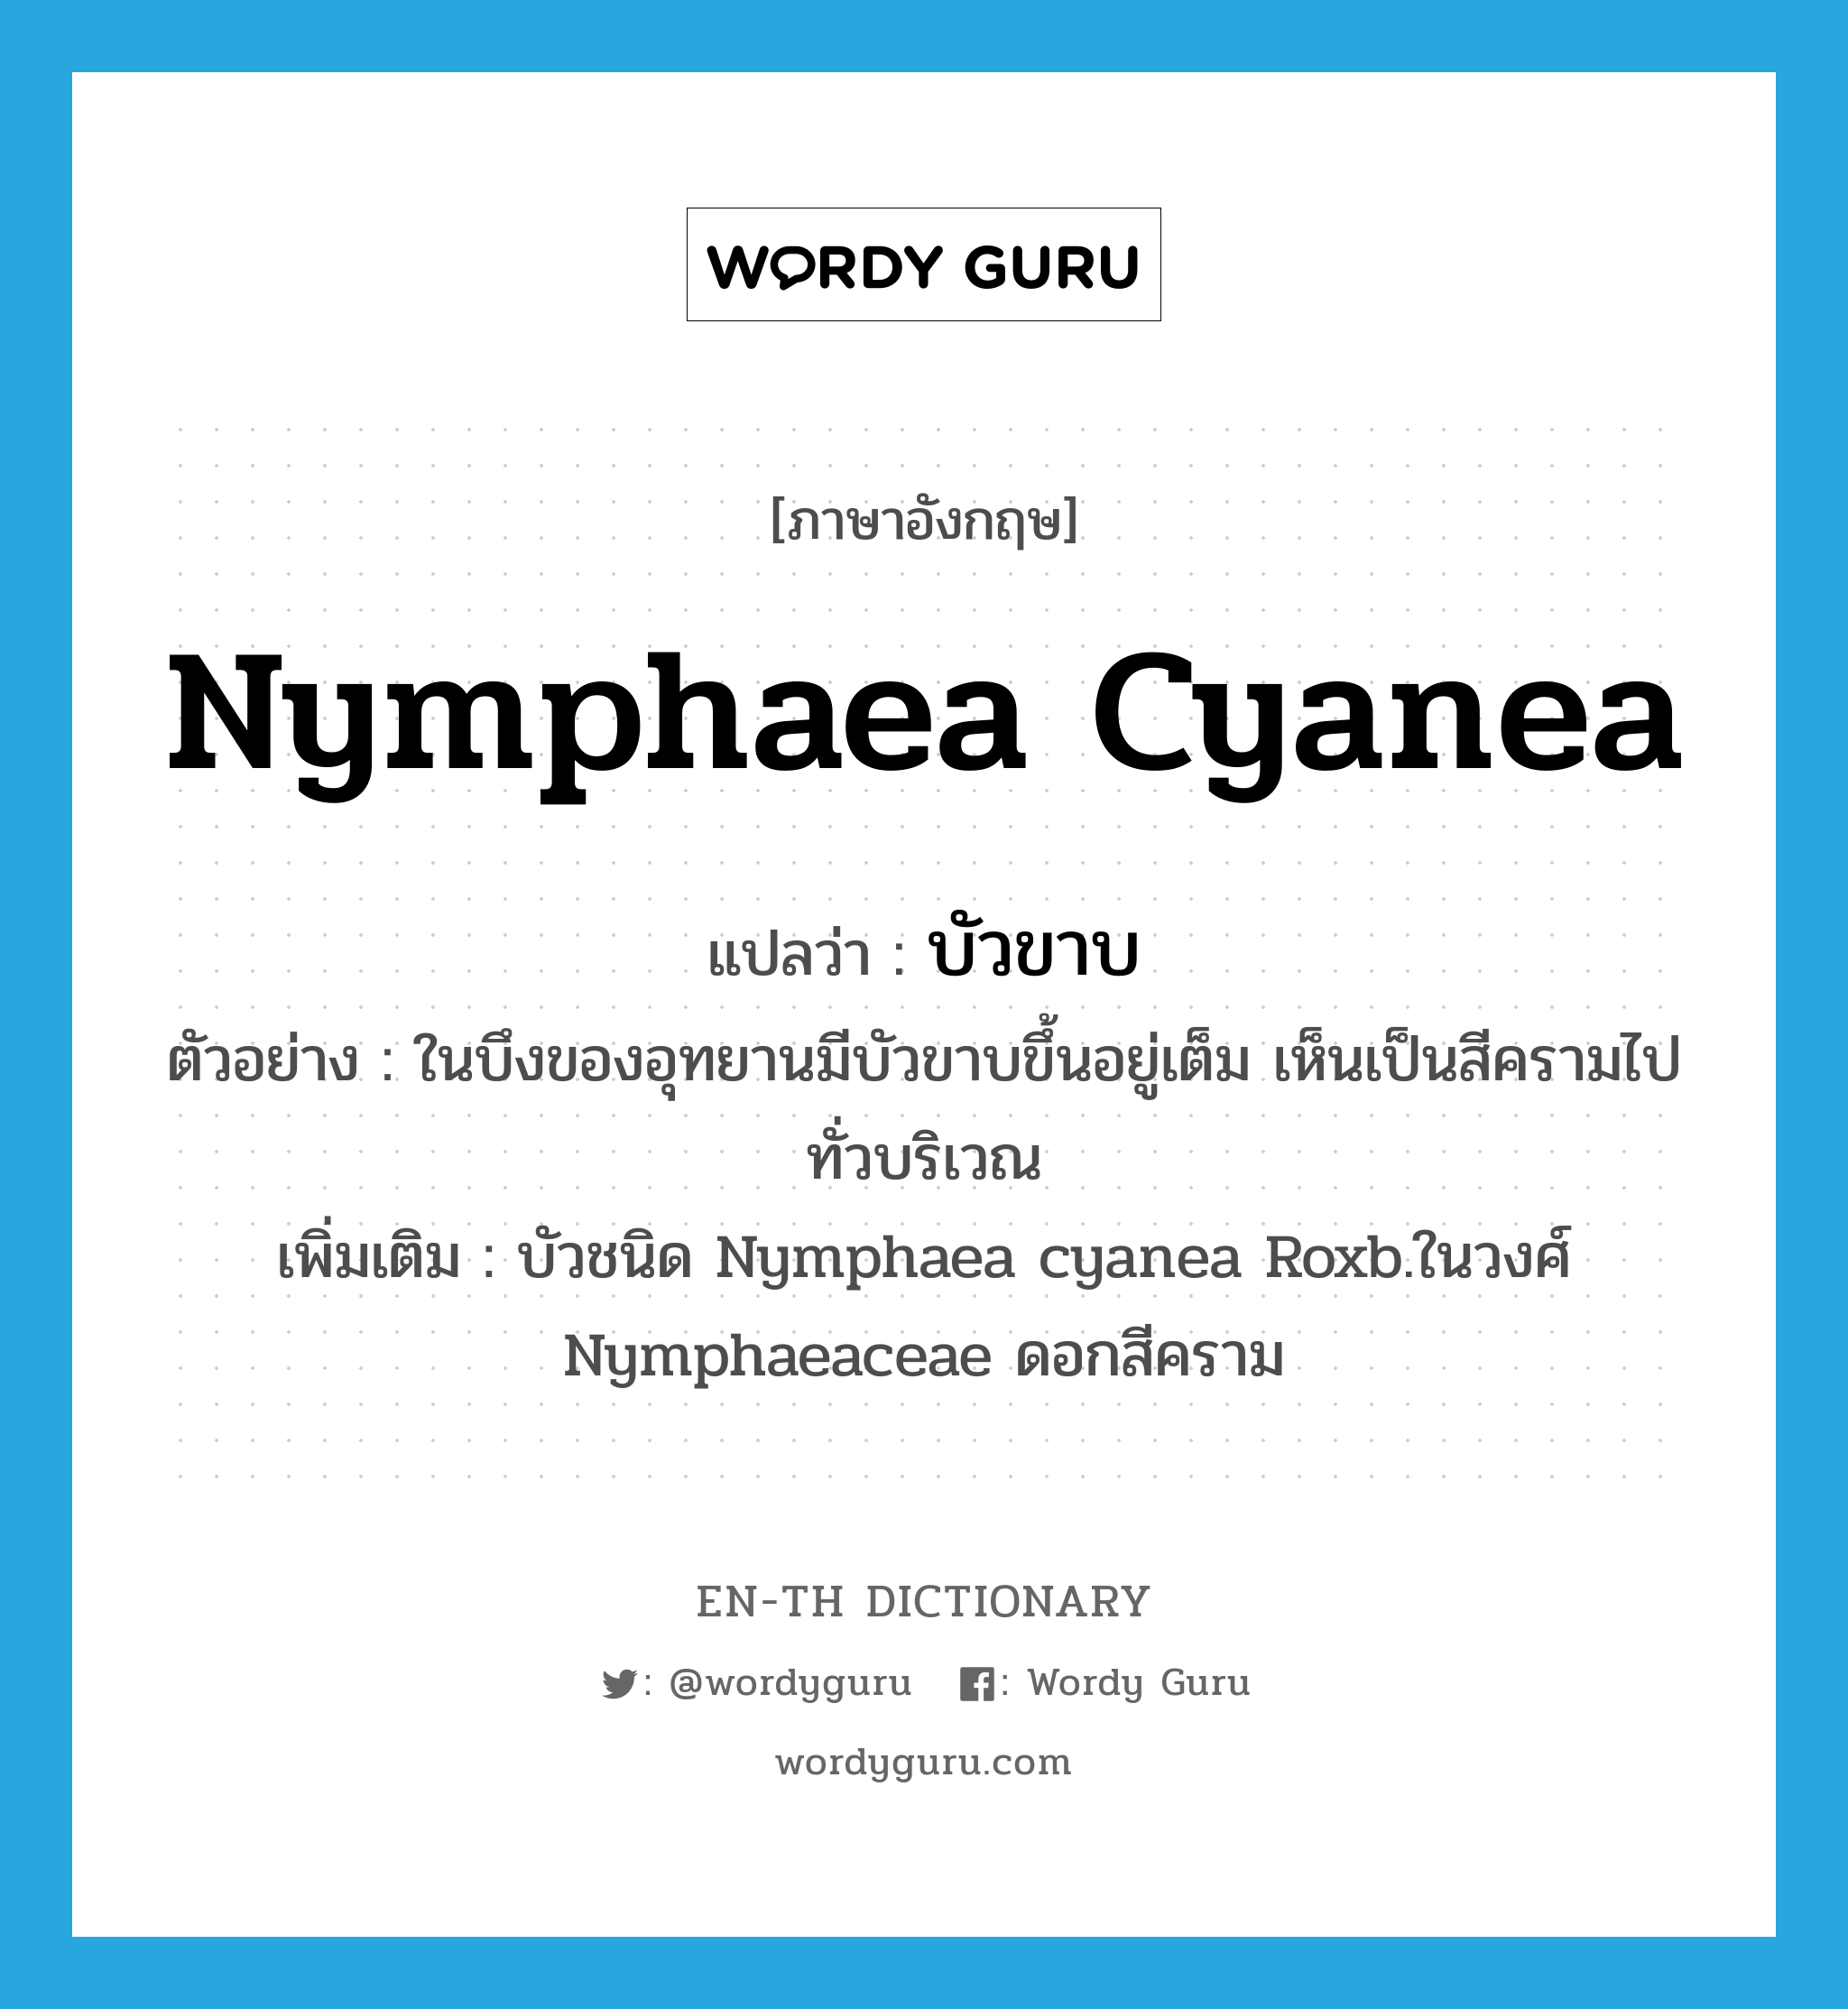 Nymphaea cyanea แปลว่า?, คำศัพท์ภาษาอังกฤษ Nymphaea cyanea แปลว่า บัวขาบ ประเภท N ตัวอย่าง ในบึงของอุทยานมีบัวขาบขึ้นอยู่เต็ม เห็นเป็นสีครามไปทั่วบริเวณ เพิ่มเติม บัวชนิด Nymphaea cyanea Roxb.ในวงศ์ Nymphaeaceae ดอกสีคราม หมวด N